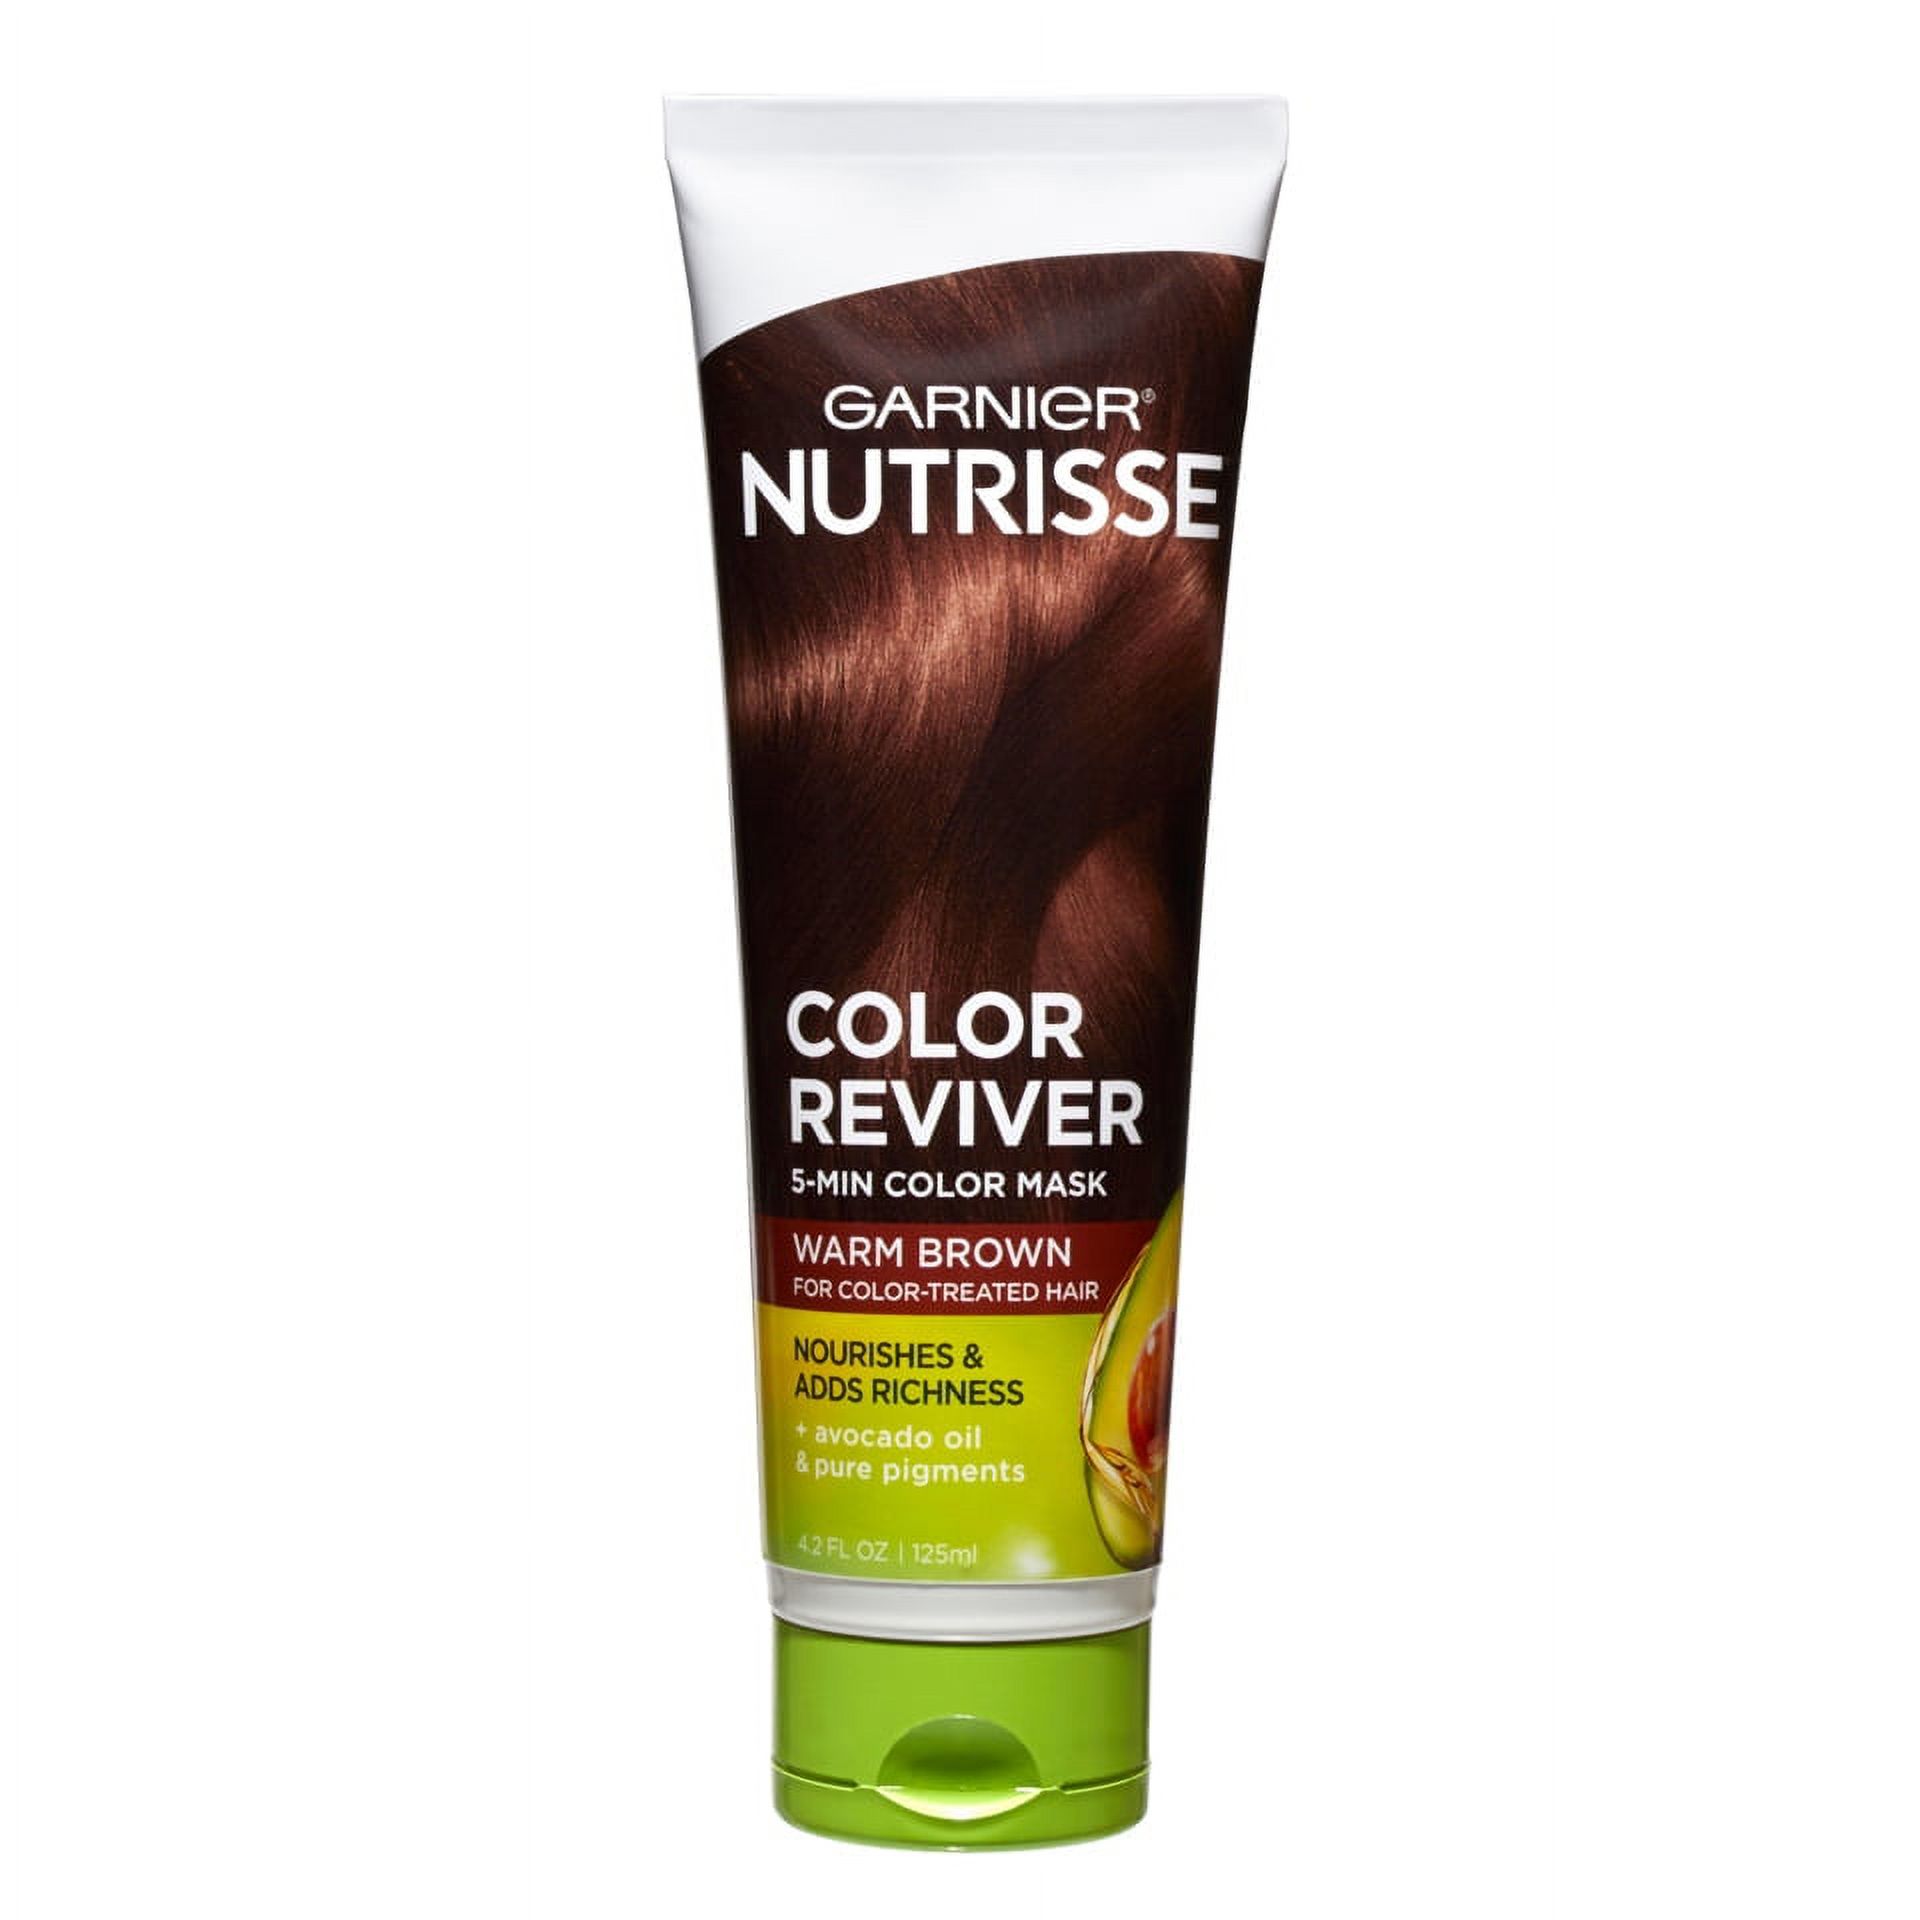 Garnier Nutrisse Nourishing Hair Color Reviver, Warm Brown, 4.2 fl oz - image 1 of 7